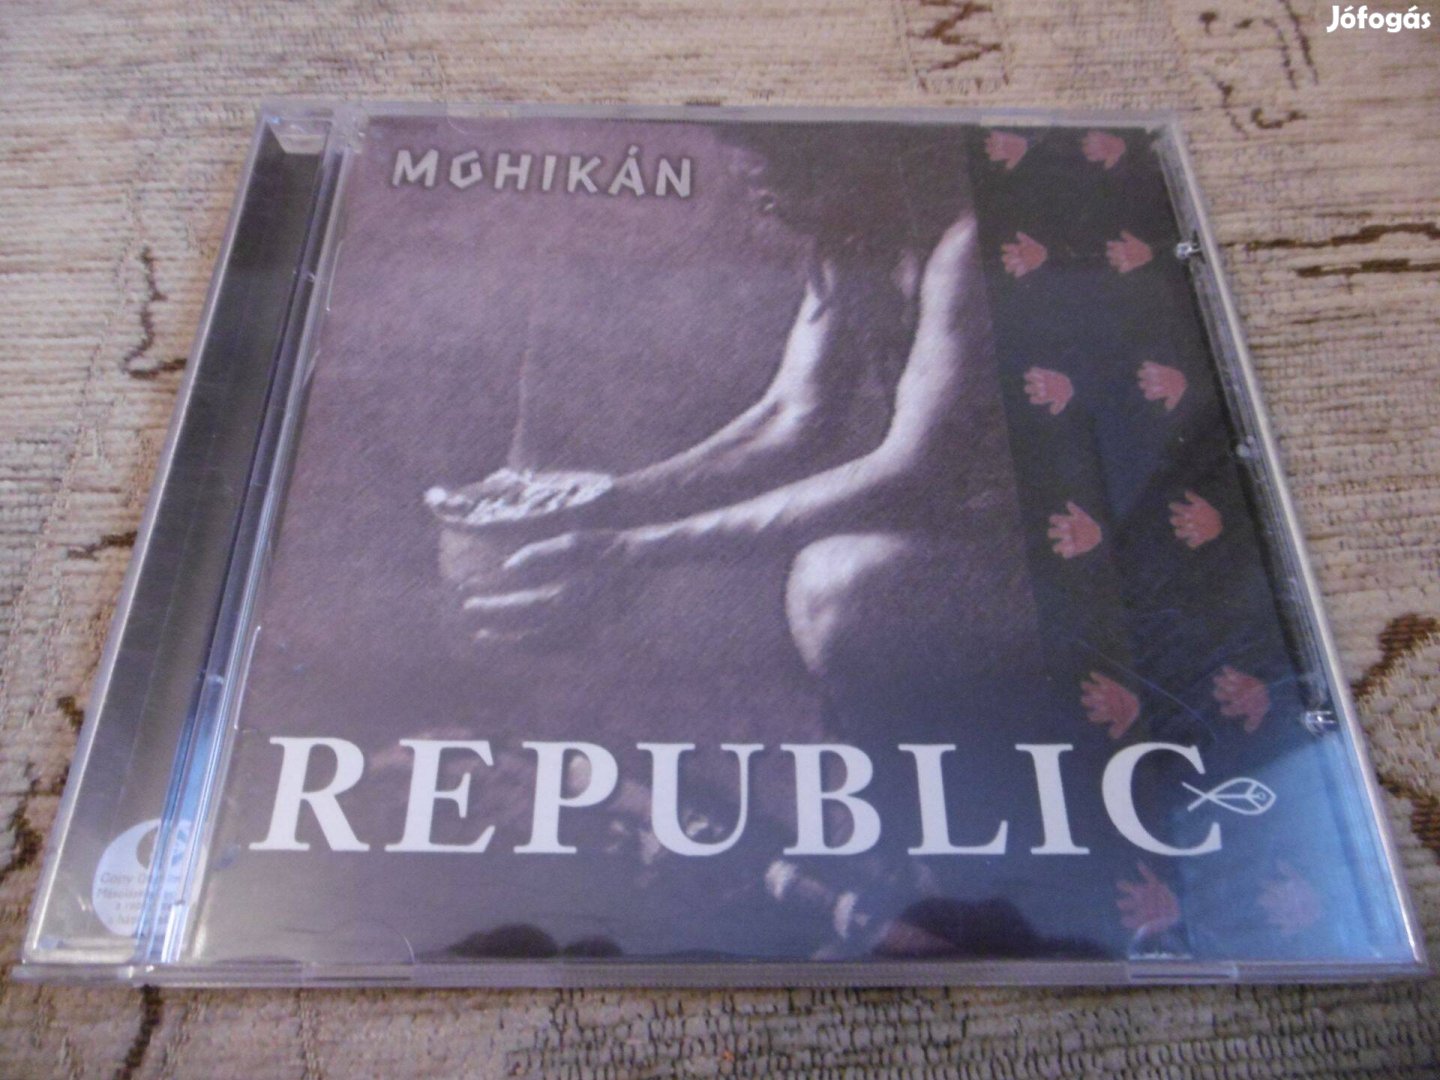 Republic - Mohikán című cd eladó!